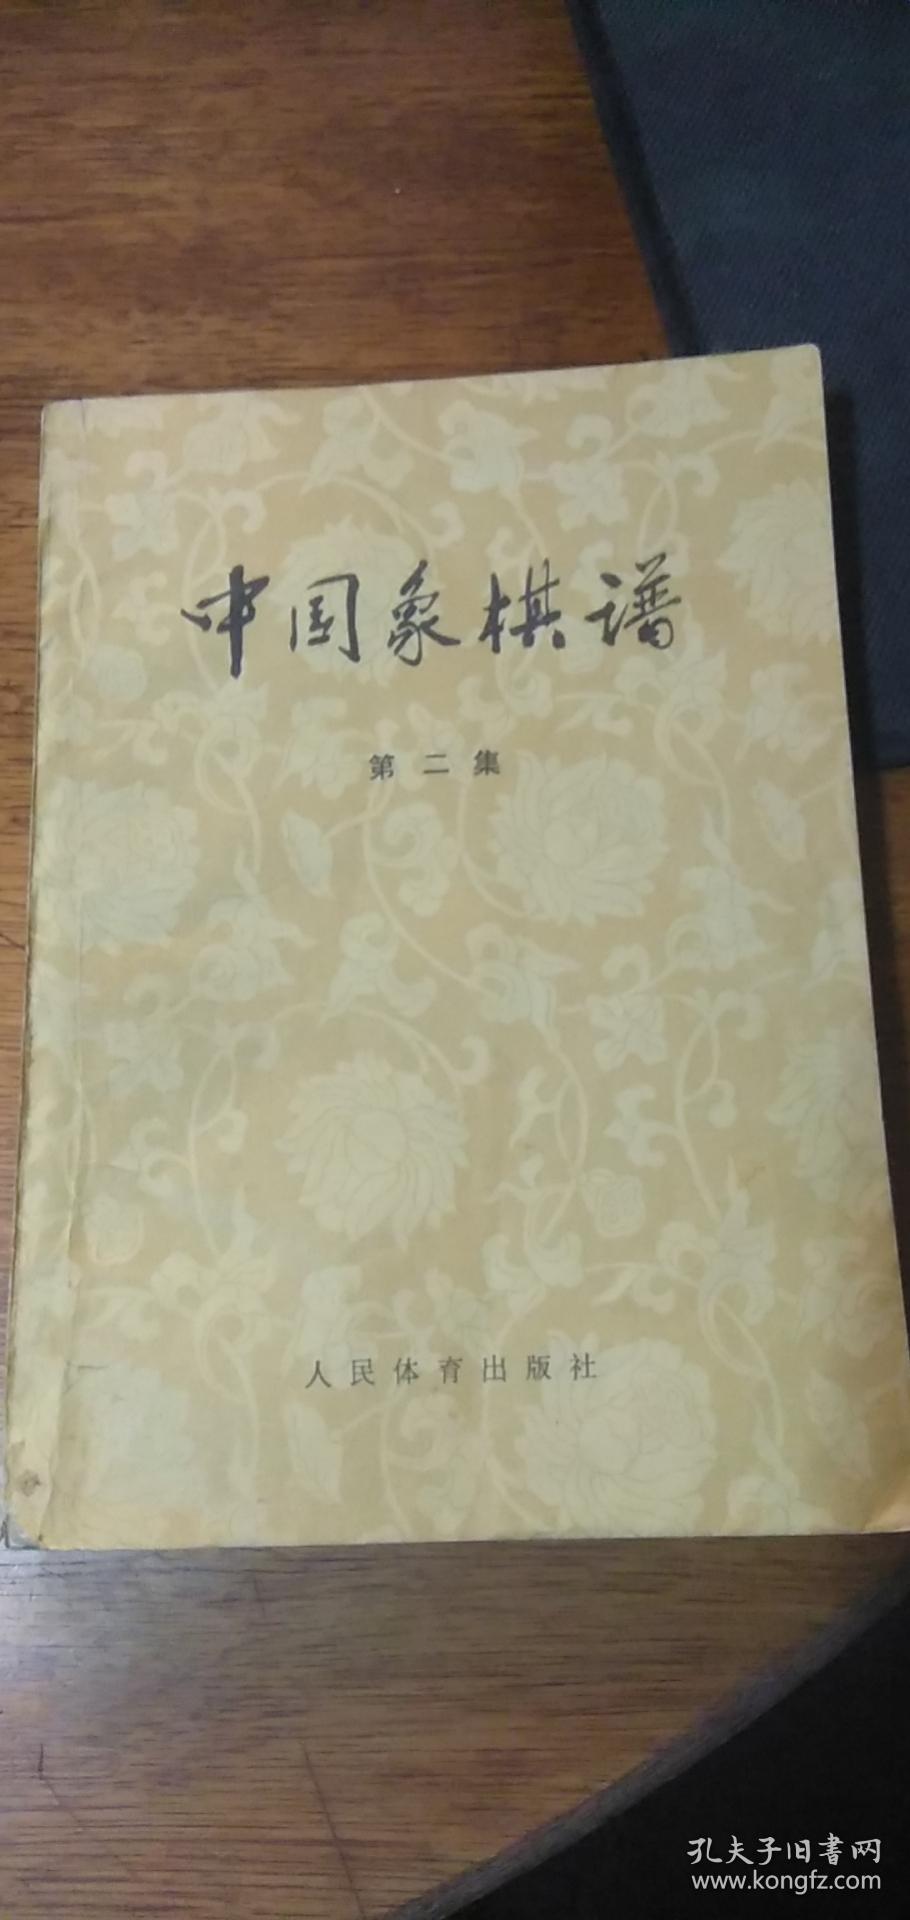 中国象棋谱《第2集》1959年1版1979版7印私藏自然旧